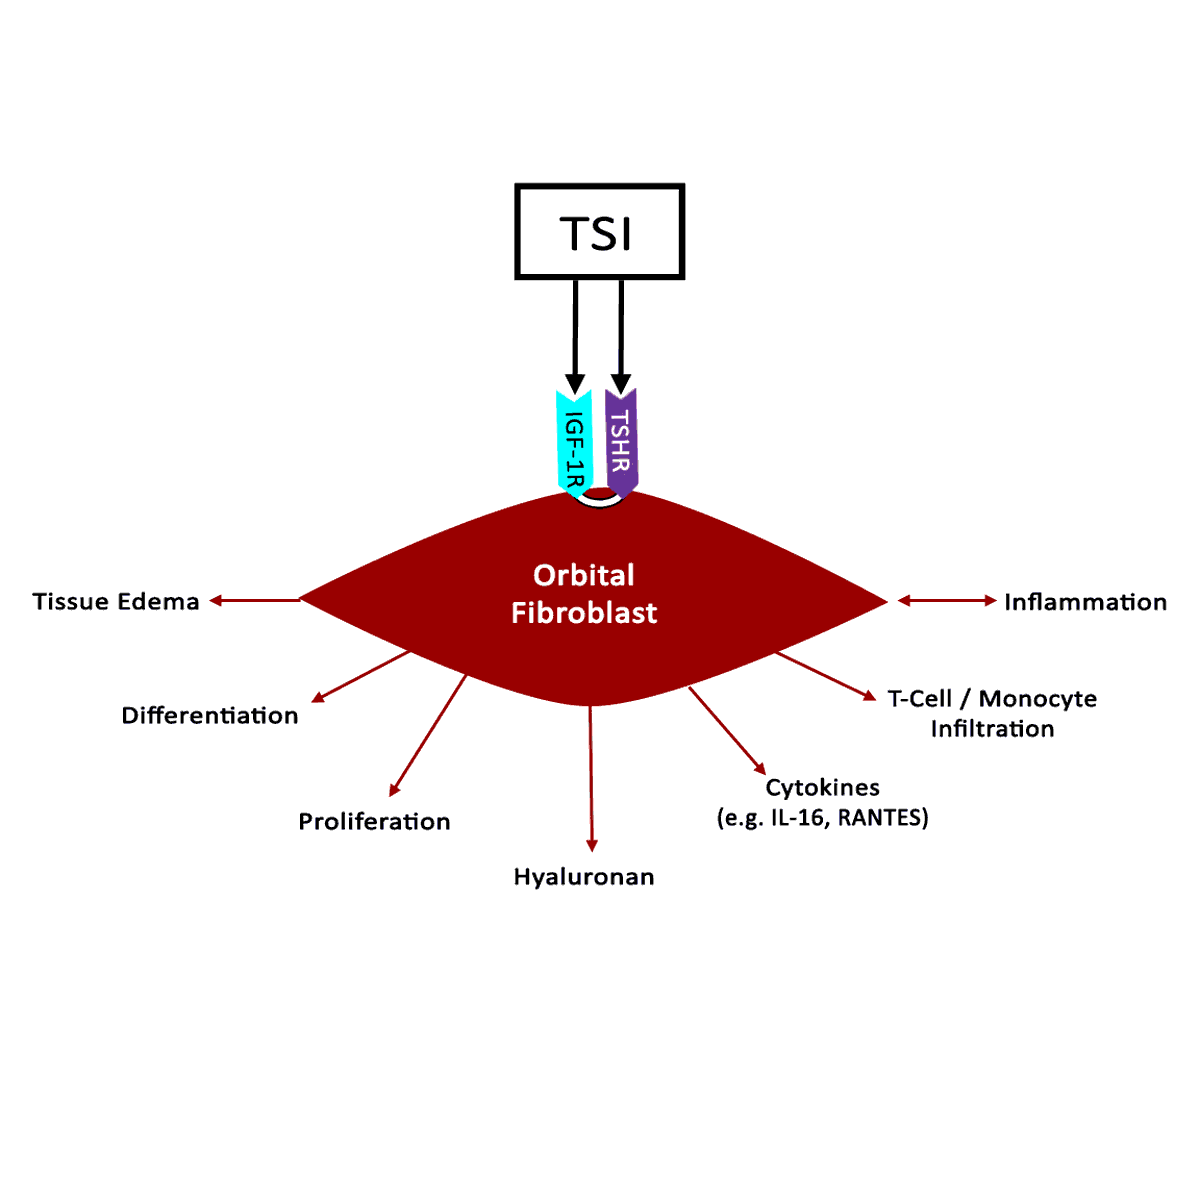  Diagram demosntrating TSI activation of IGF-1R and TSHR recceptors in orbital fibroblasts.